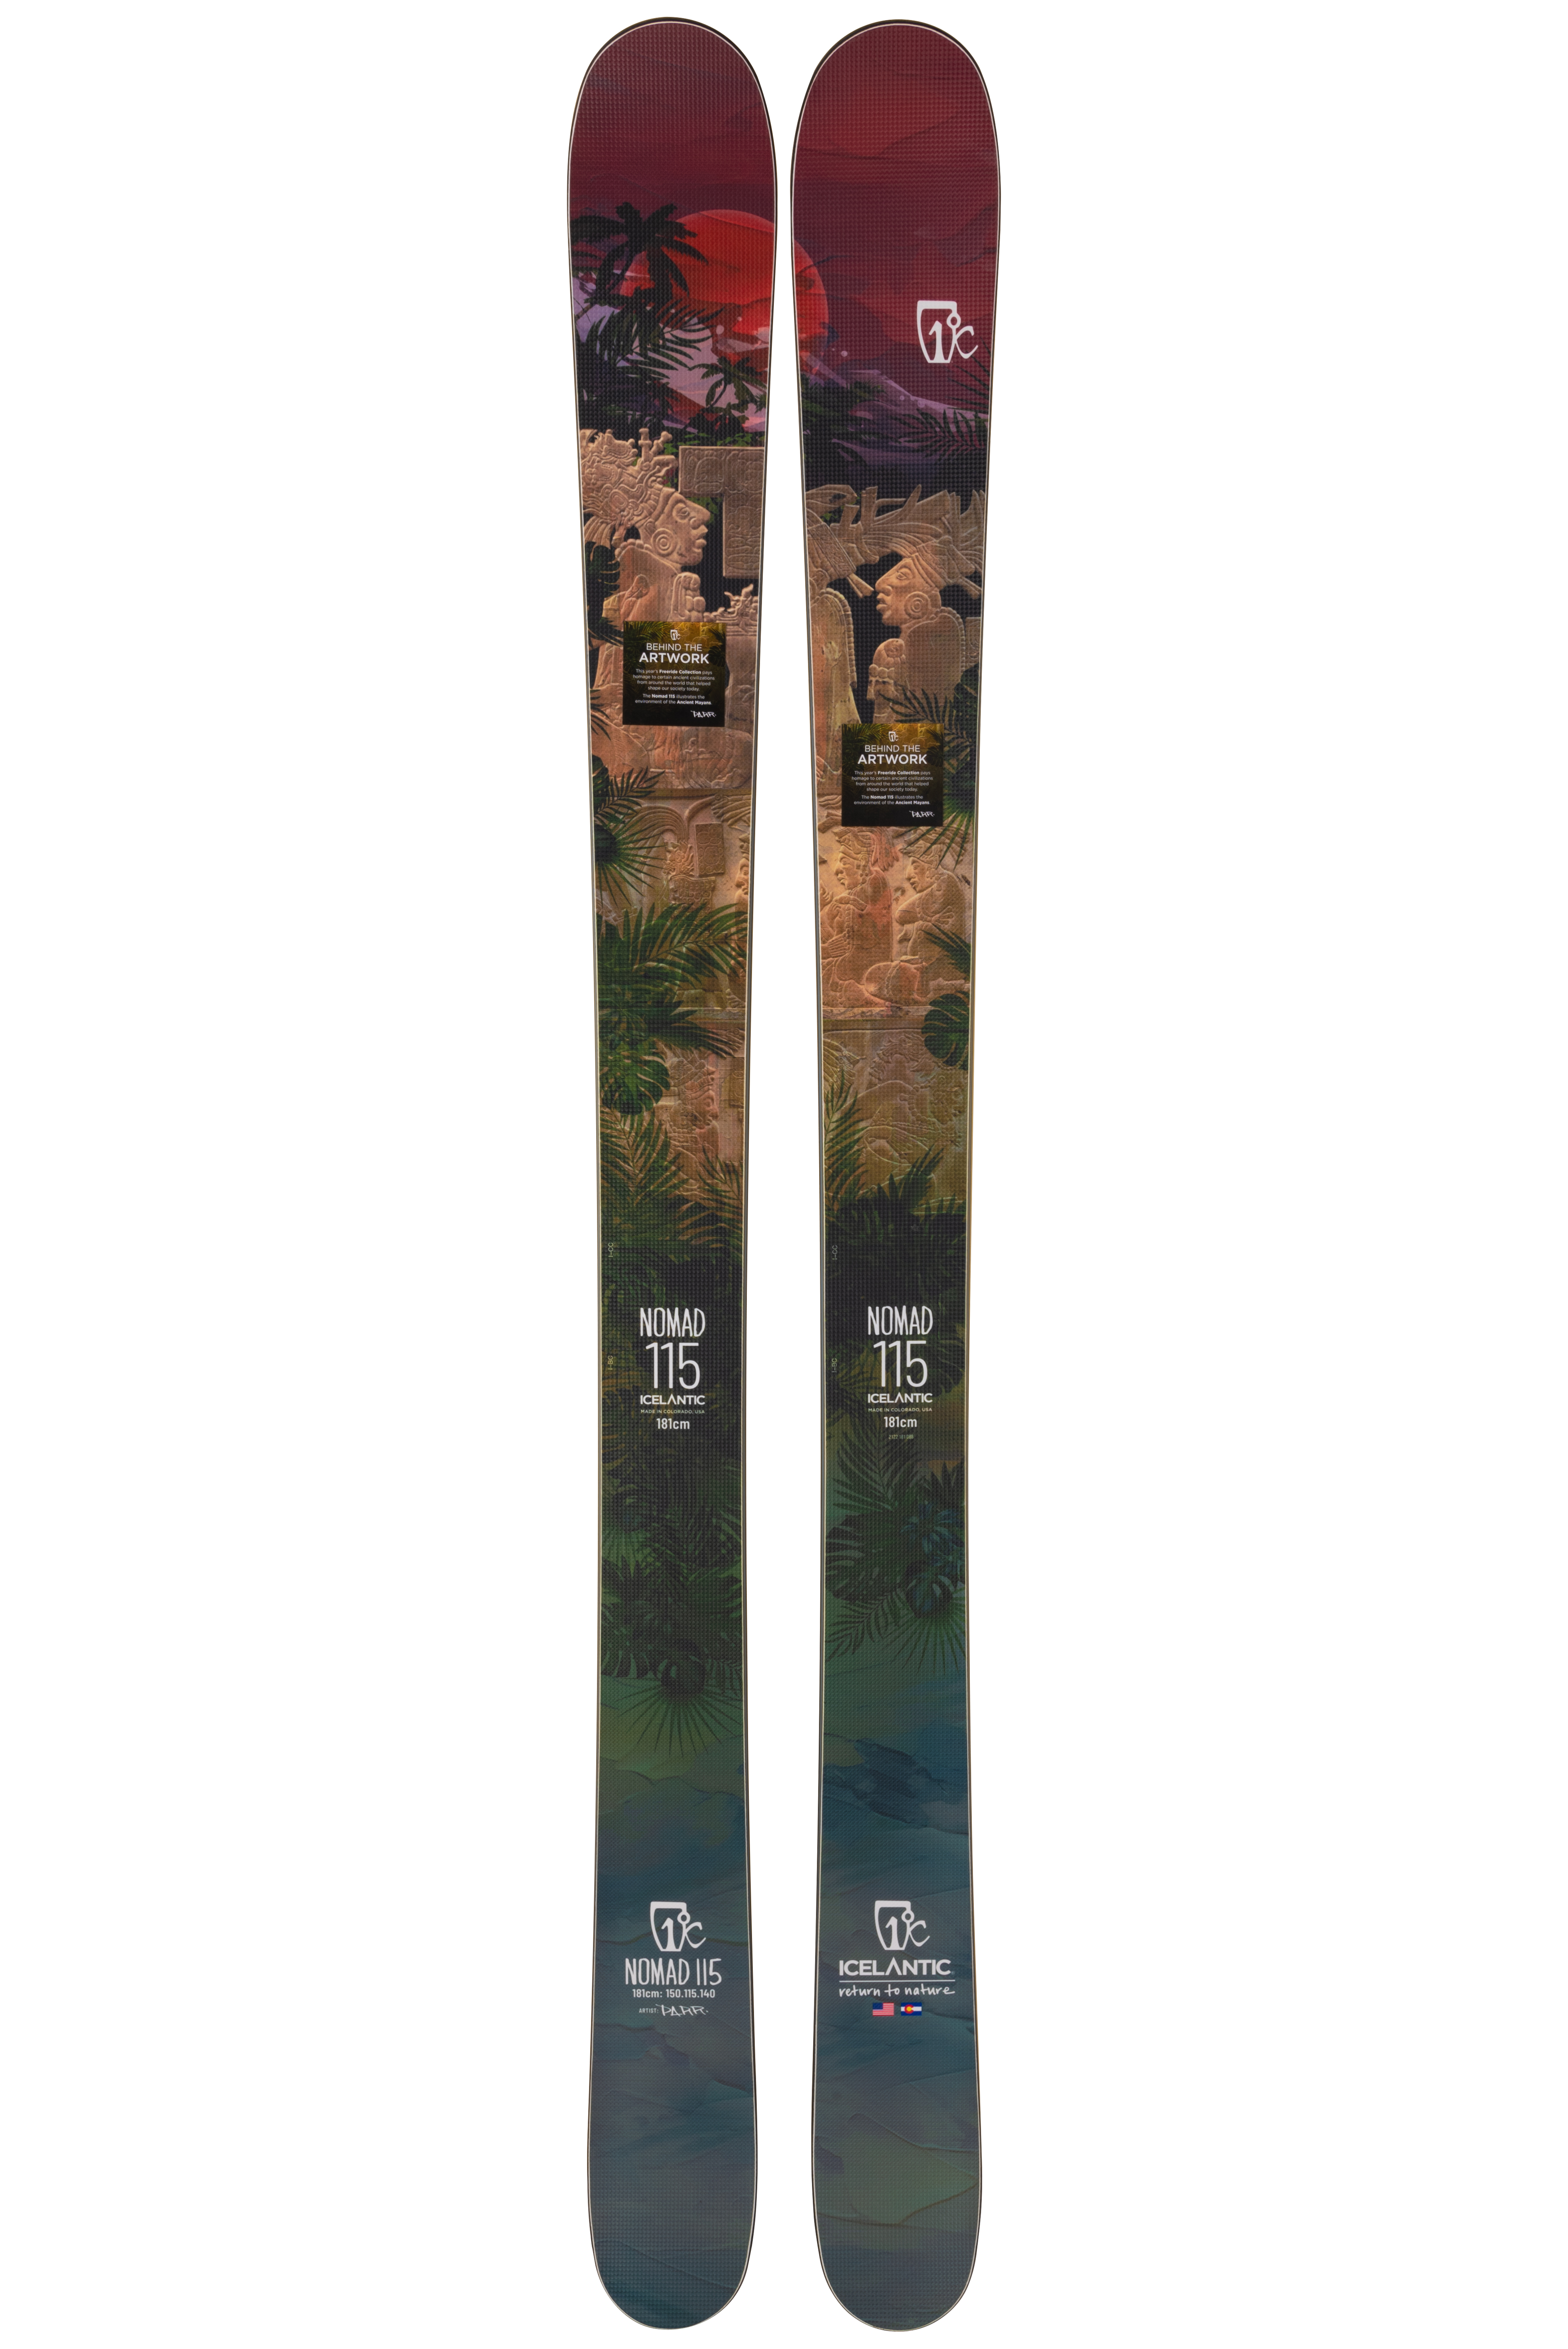 Купить мужские лыжи Icelantic Nomad 115 2021/2022 181cm в Киеве